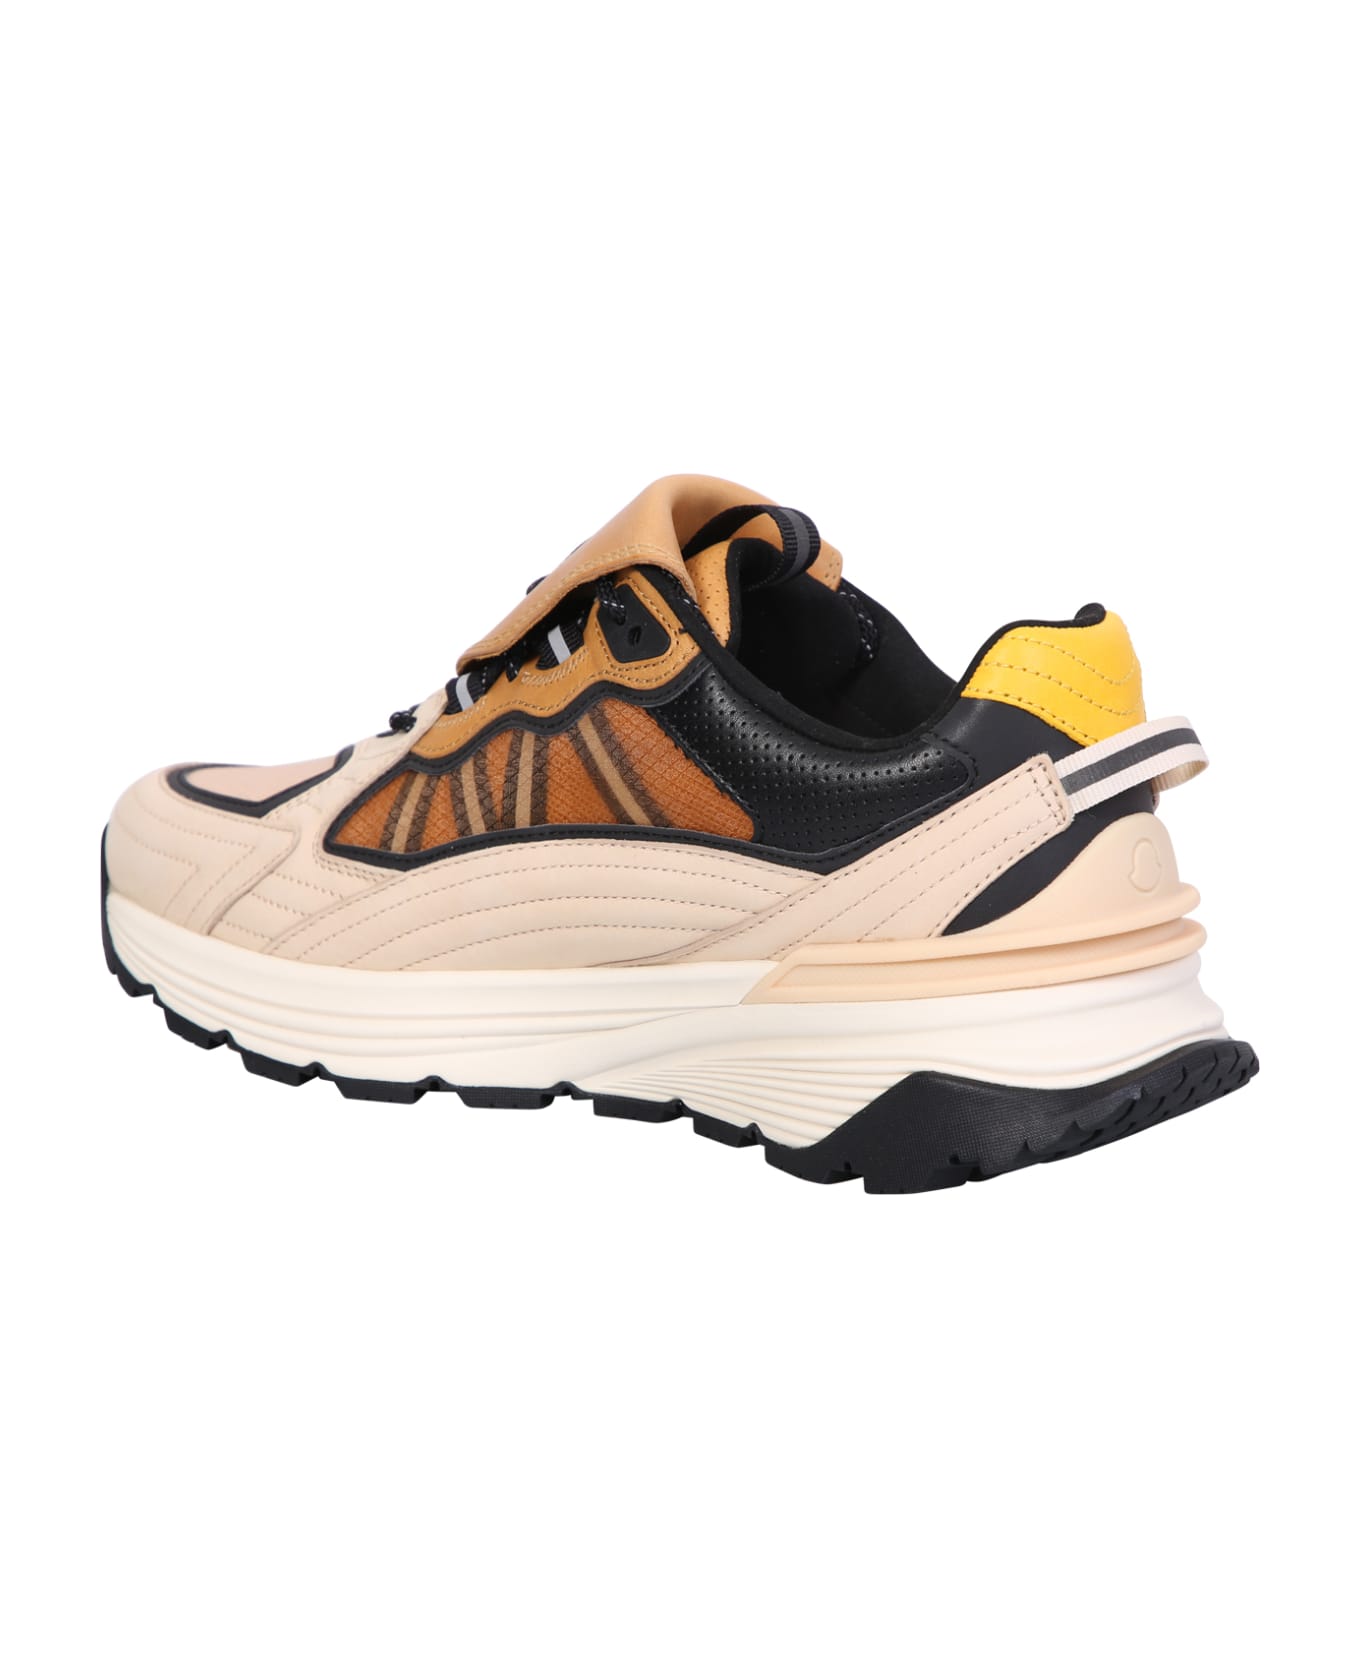 Moncler Genius Palm Lite Runner Sneakers - Beige スニーカー